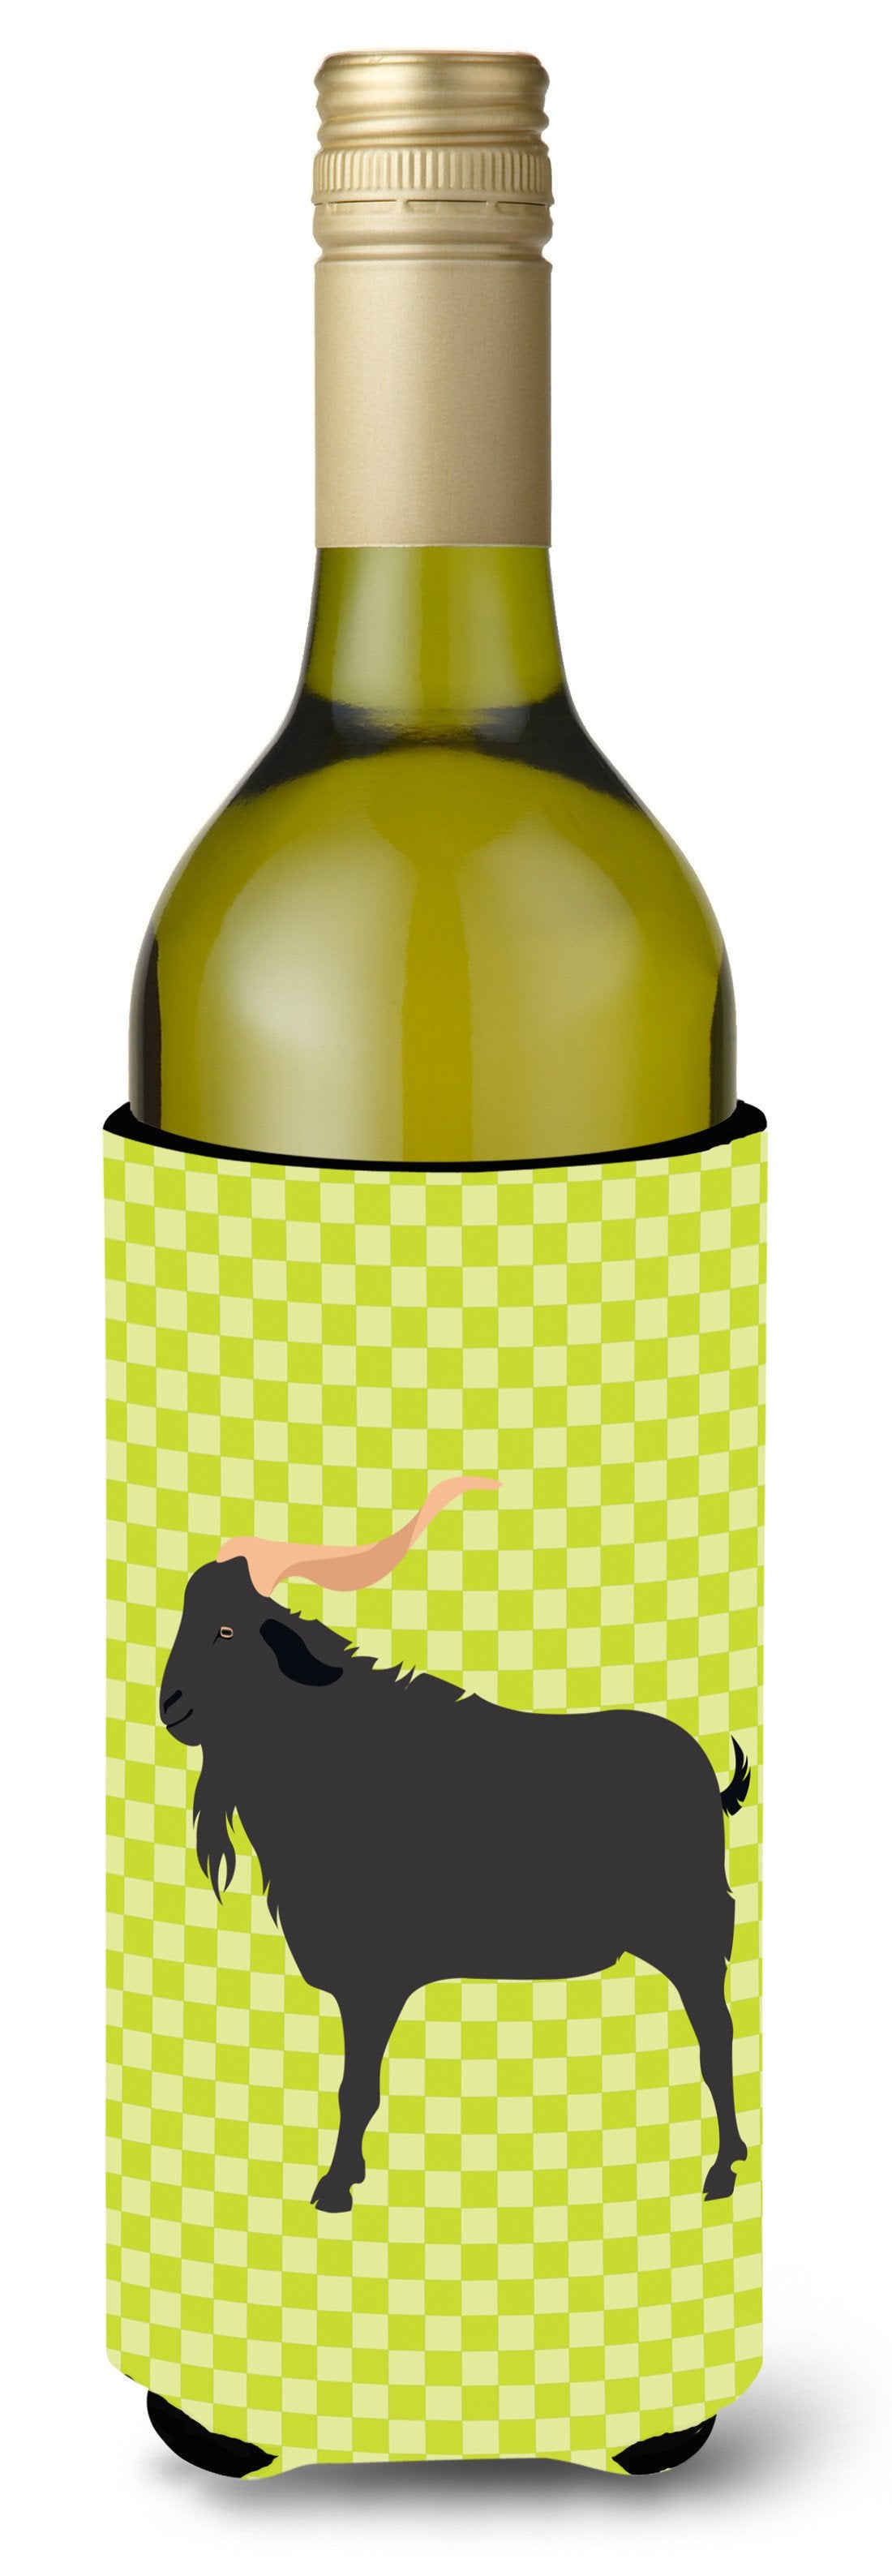 Verata Goat Green Wine Bottle Beverge Insulator Hugger BB7708LITERK by Caroline's Treasures